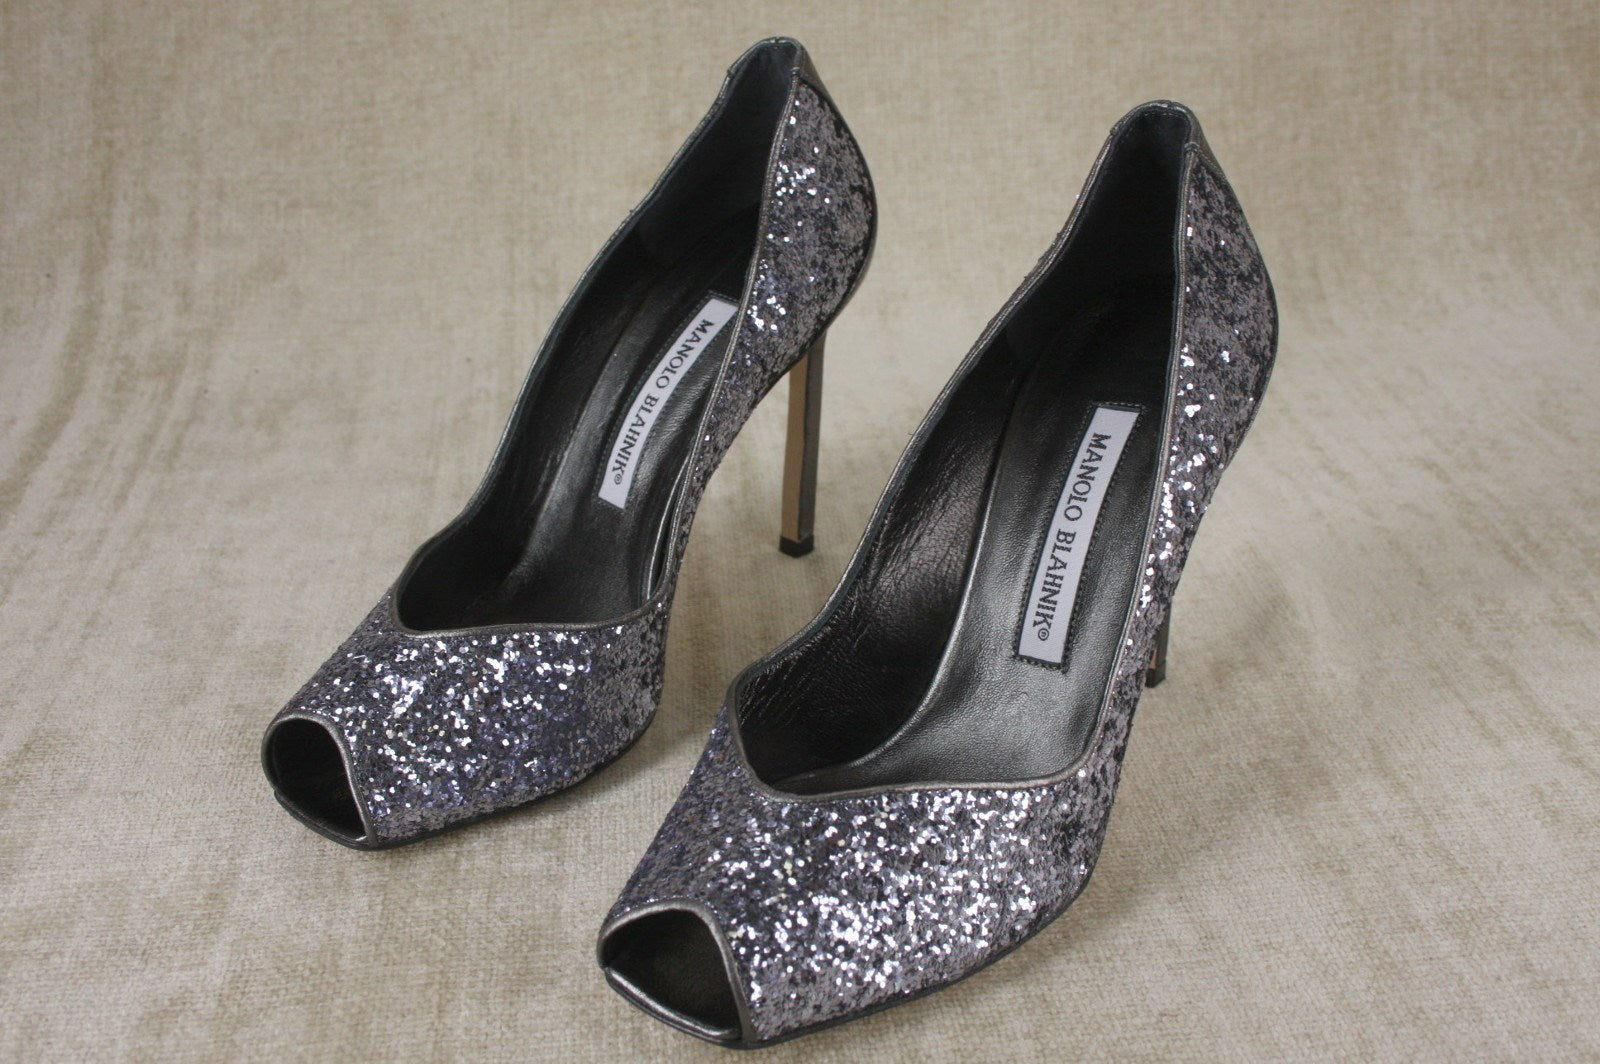 Manolo Blahnik Glitter Fatducabo Open Toe Heels Pumps Size 37.5 $745 NEW Sz